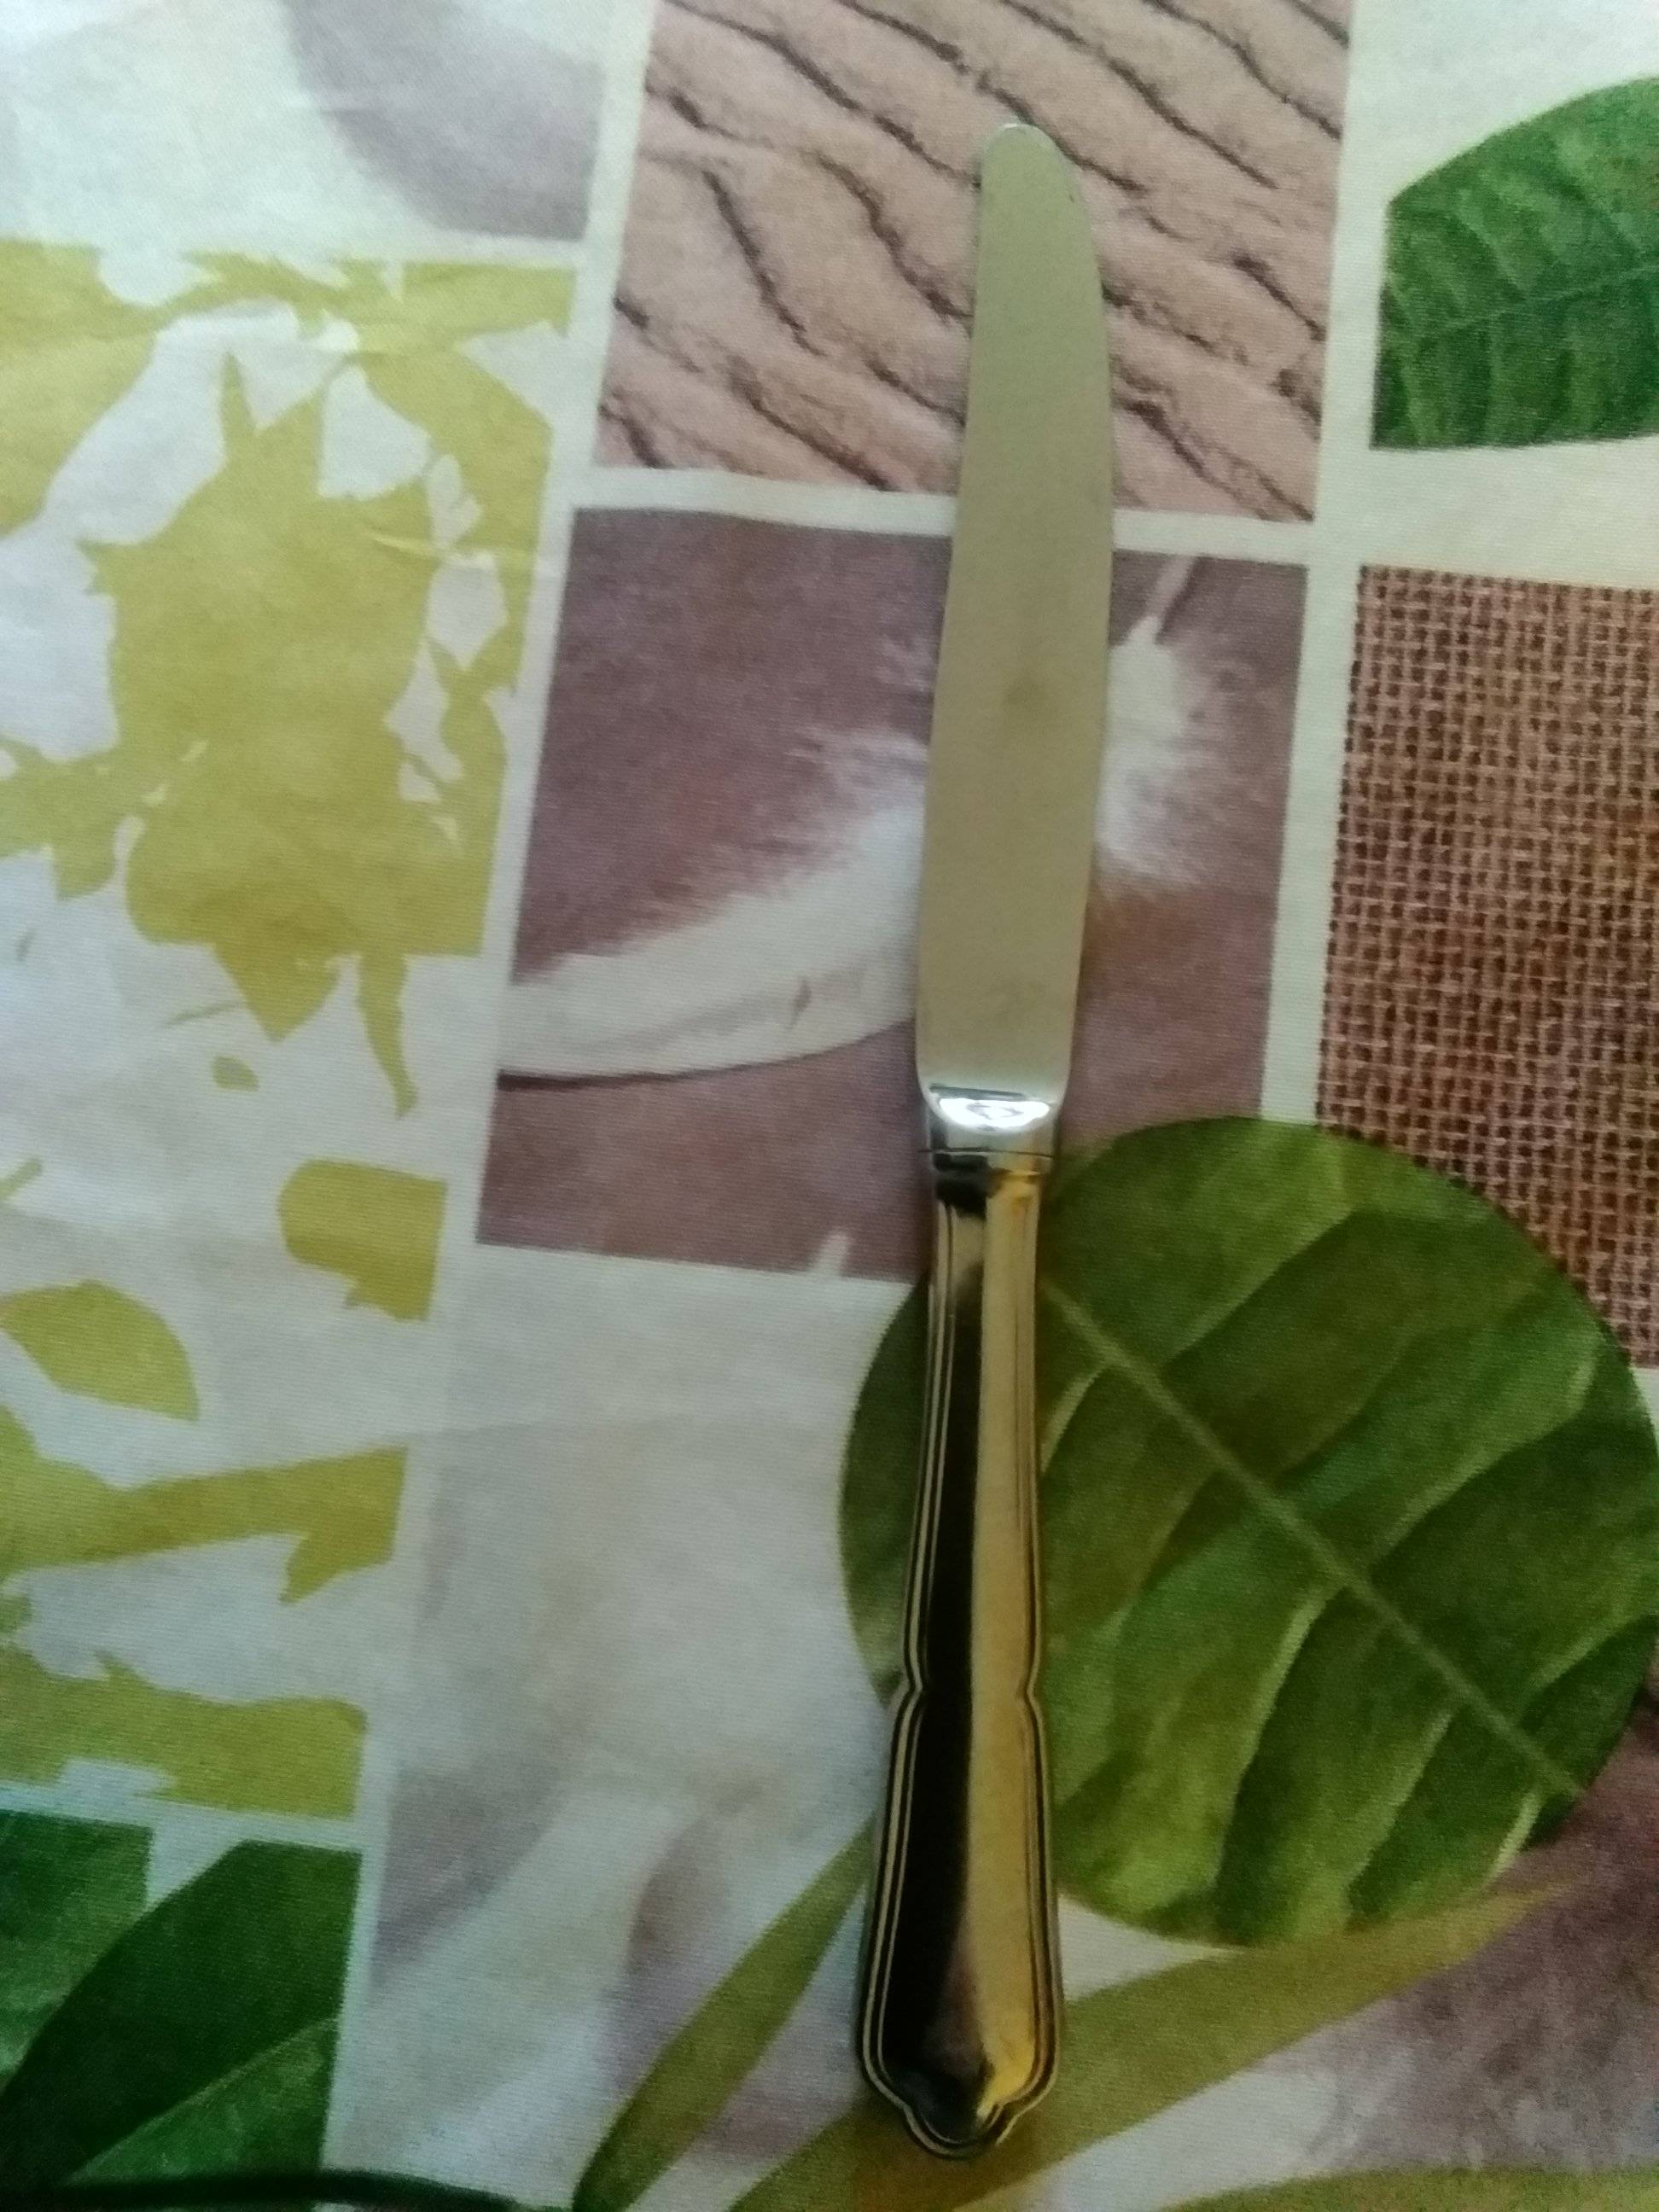 Couteau de Table Sarlat